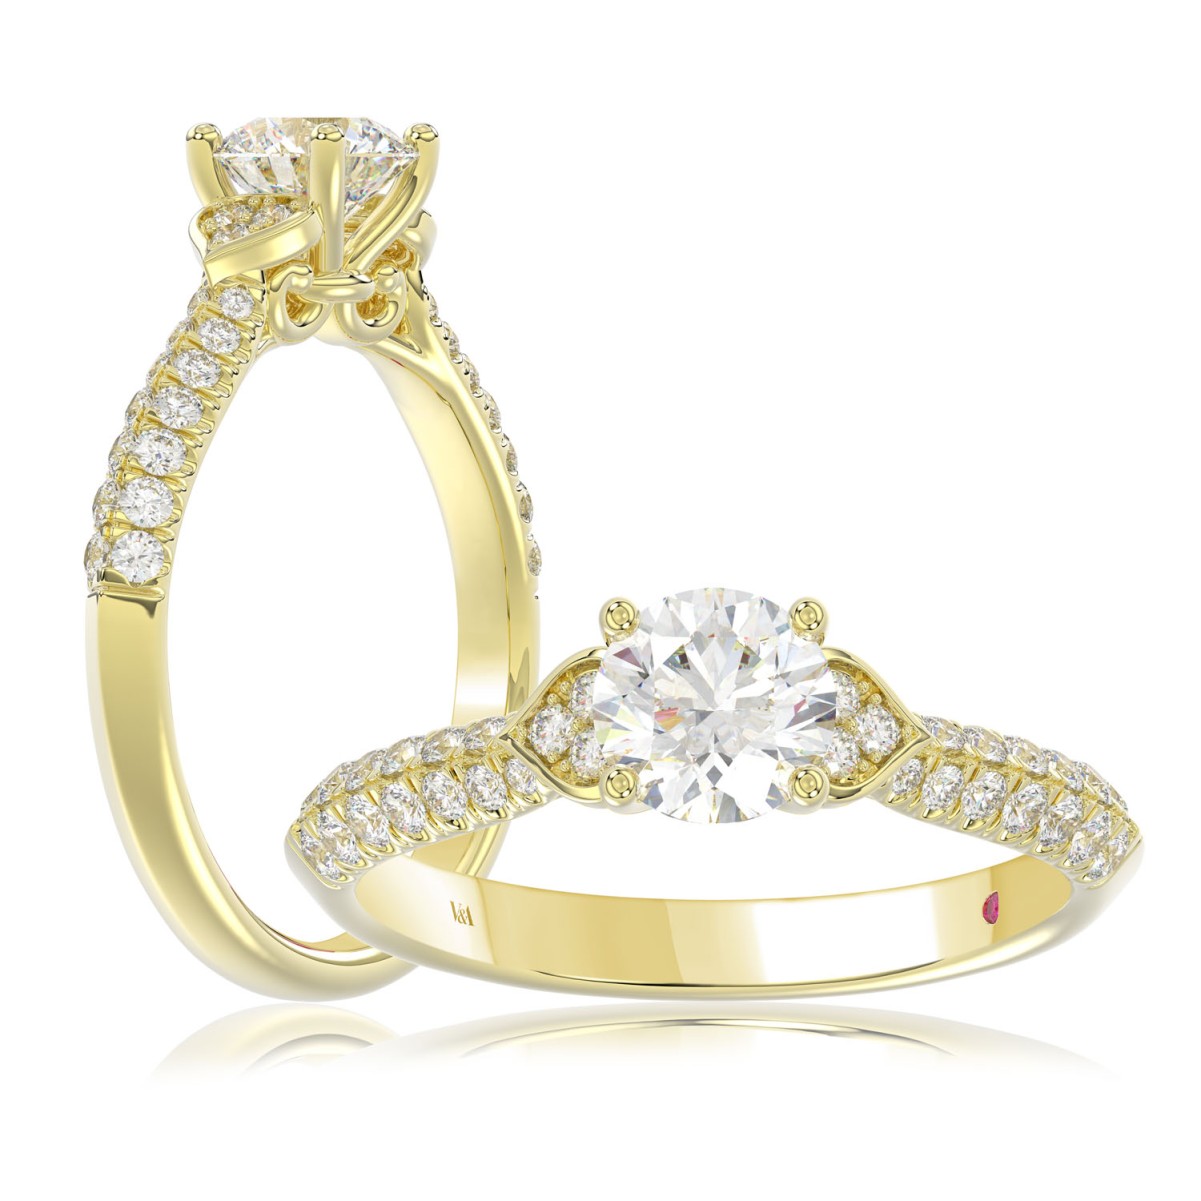 14K YELLOW GOLD 1CT ROUND DIAMOND LADIES RING (CENTER STONE ROUND DIAMOND 0.75CT)